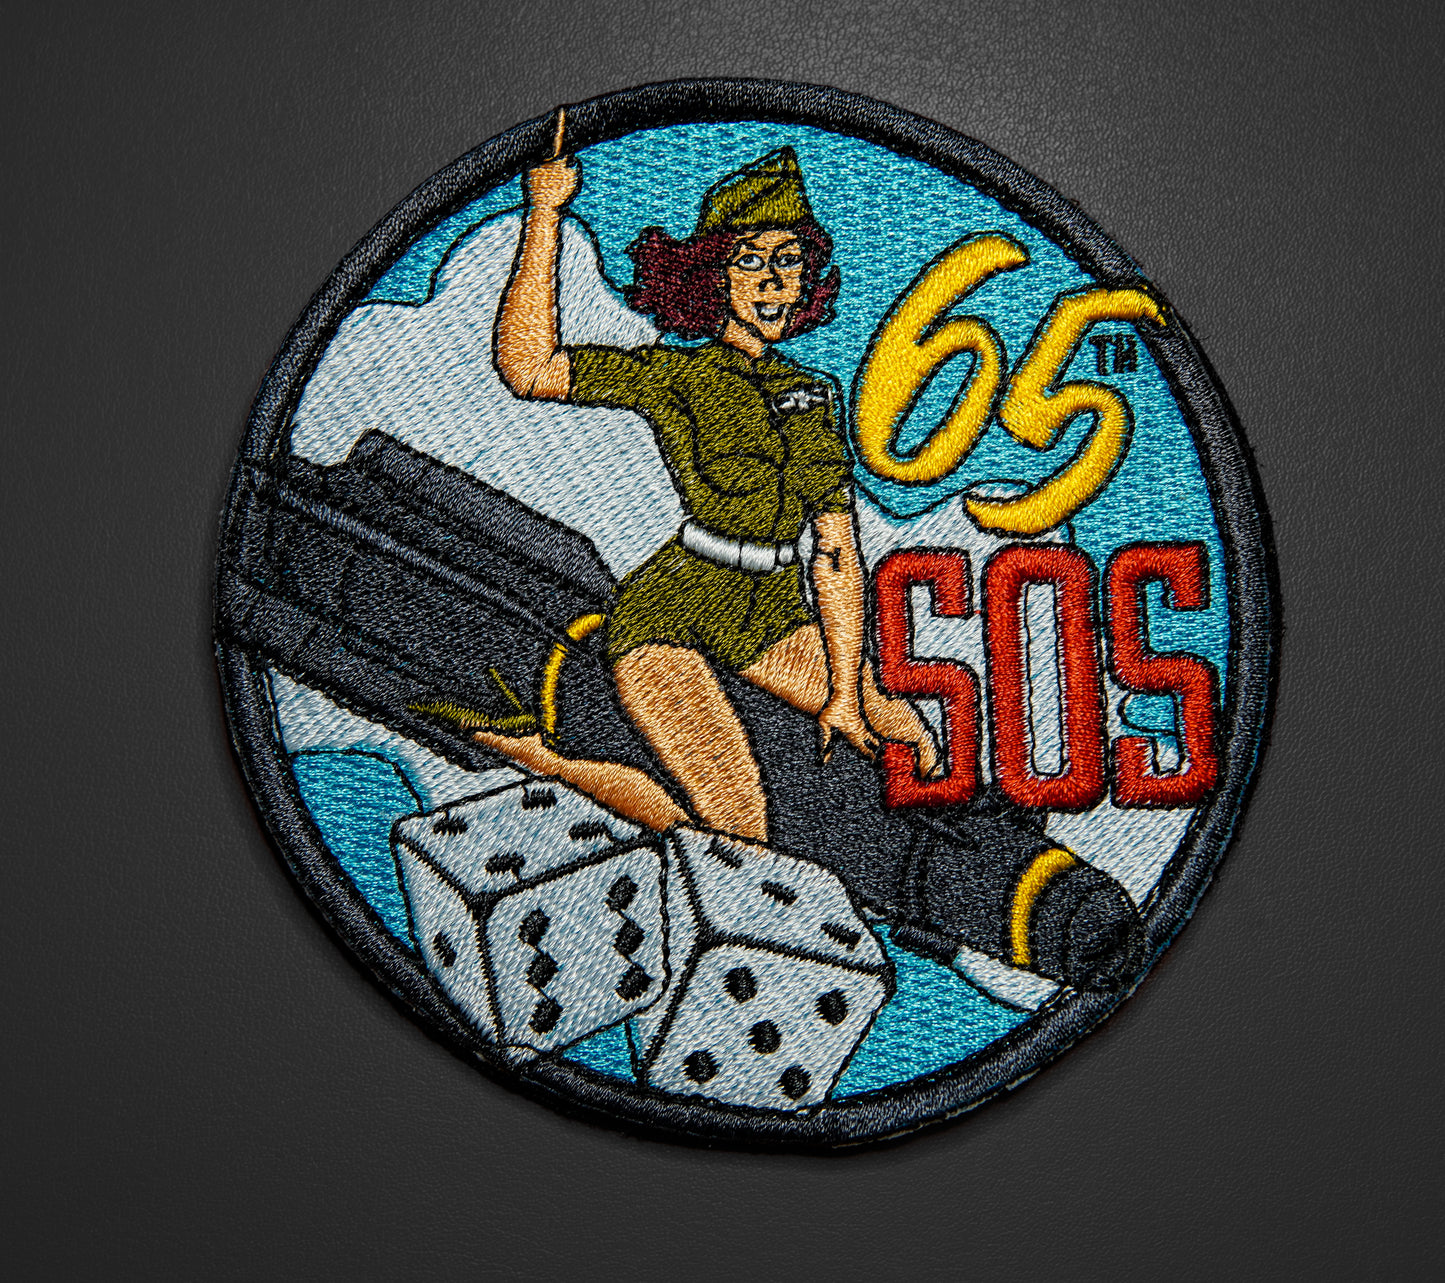 65th SOS Pinup